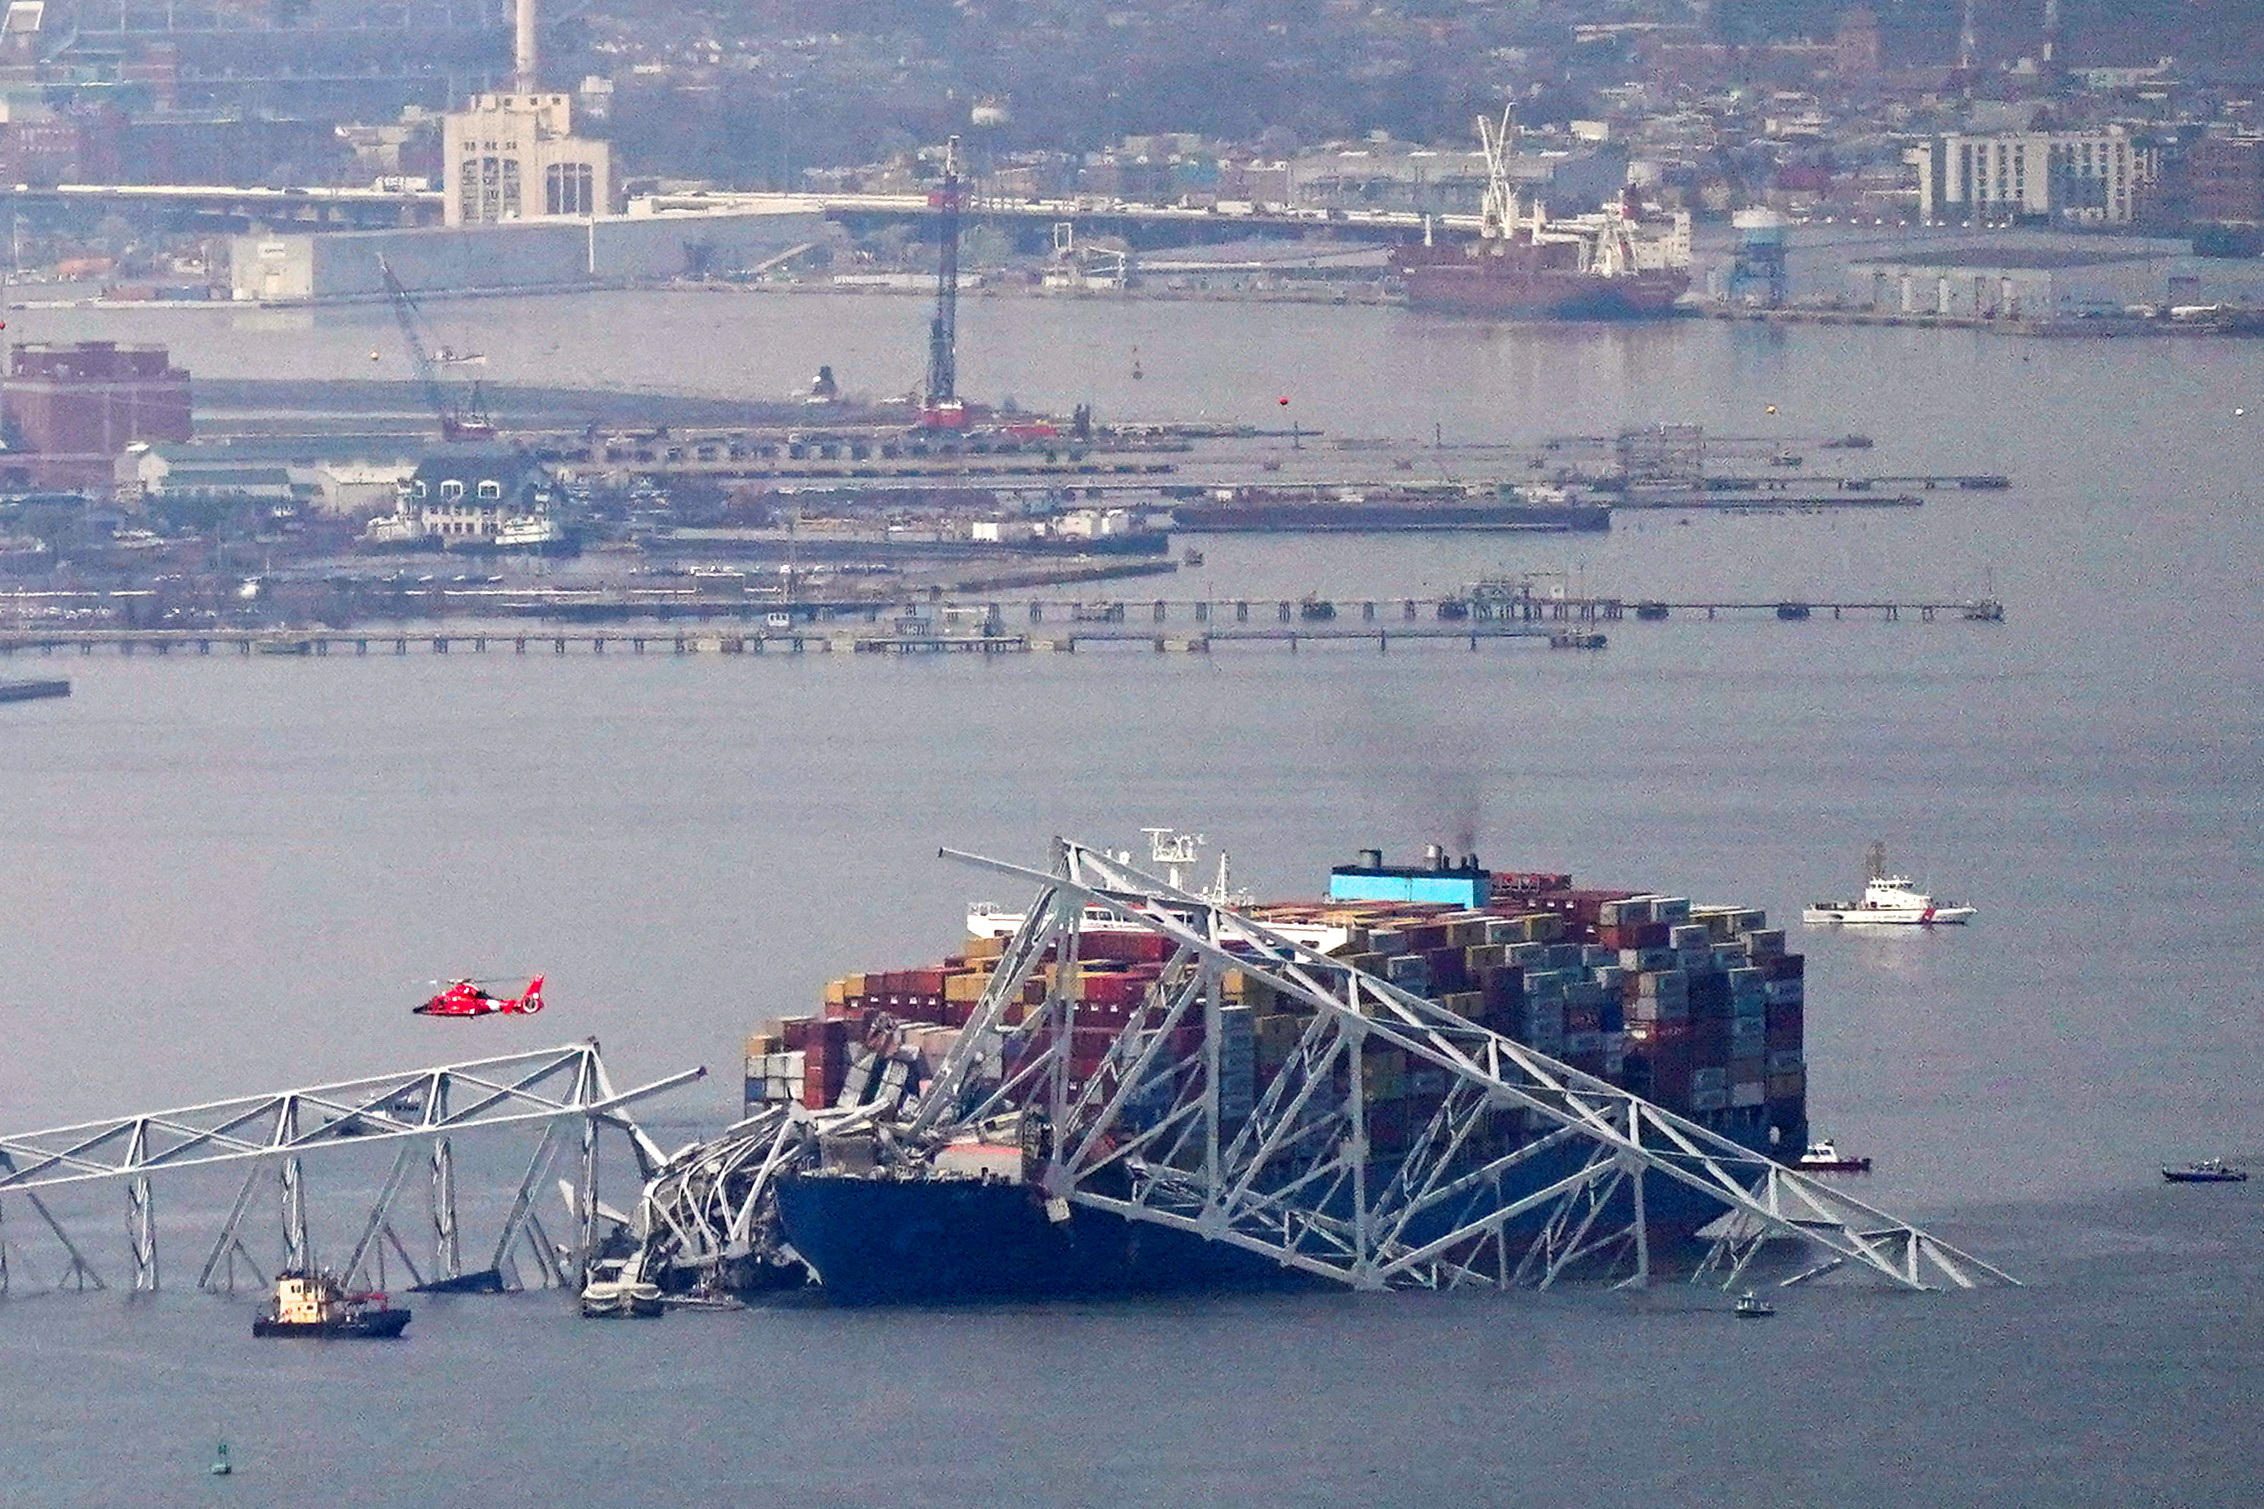 Container-ship Dali entangled in the Baltimore bridge